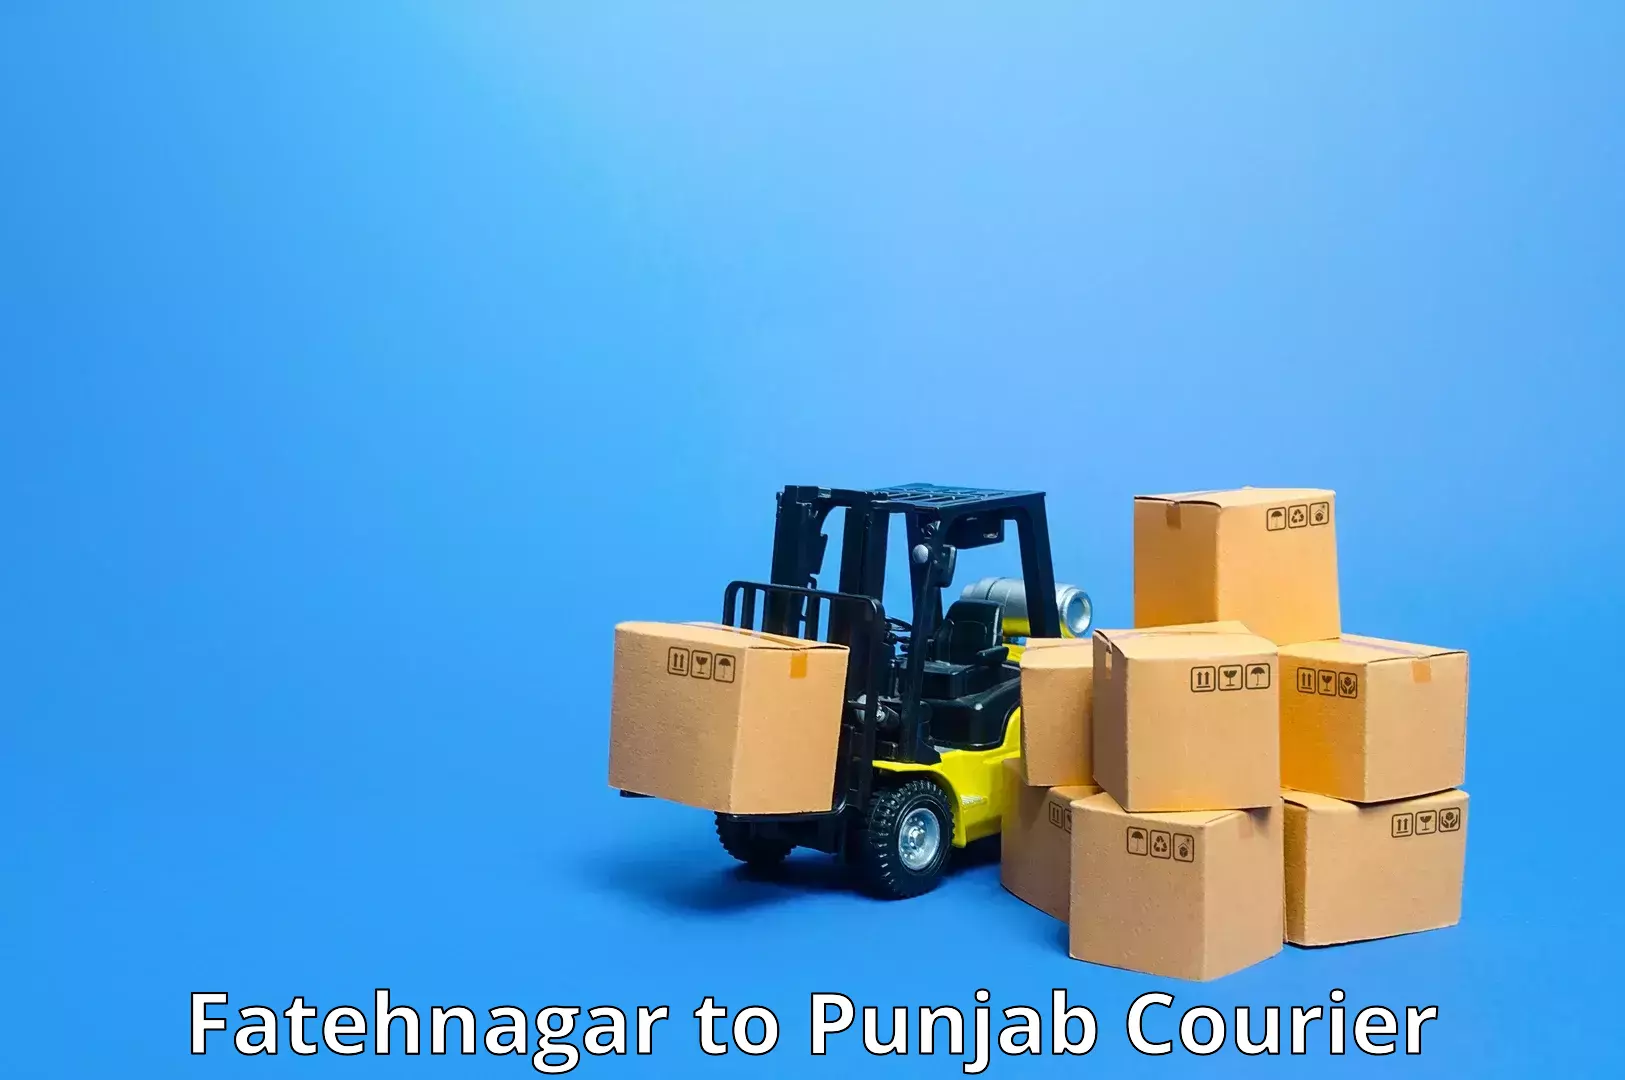 Customer-centric shipping Fatehnagar to Firozpur